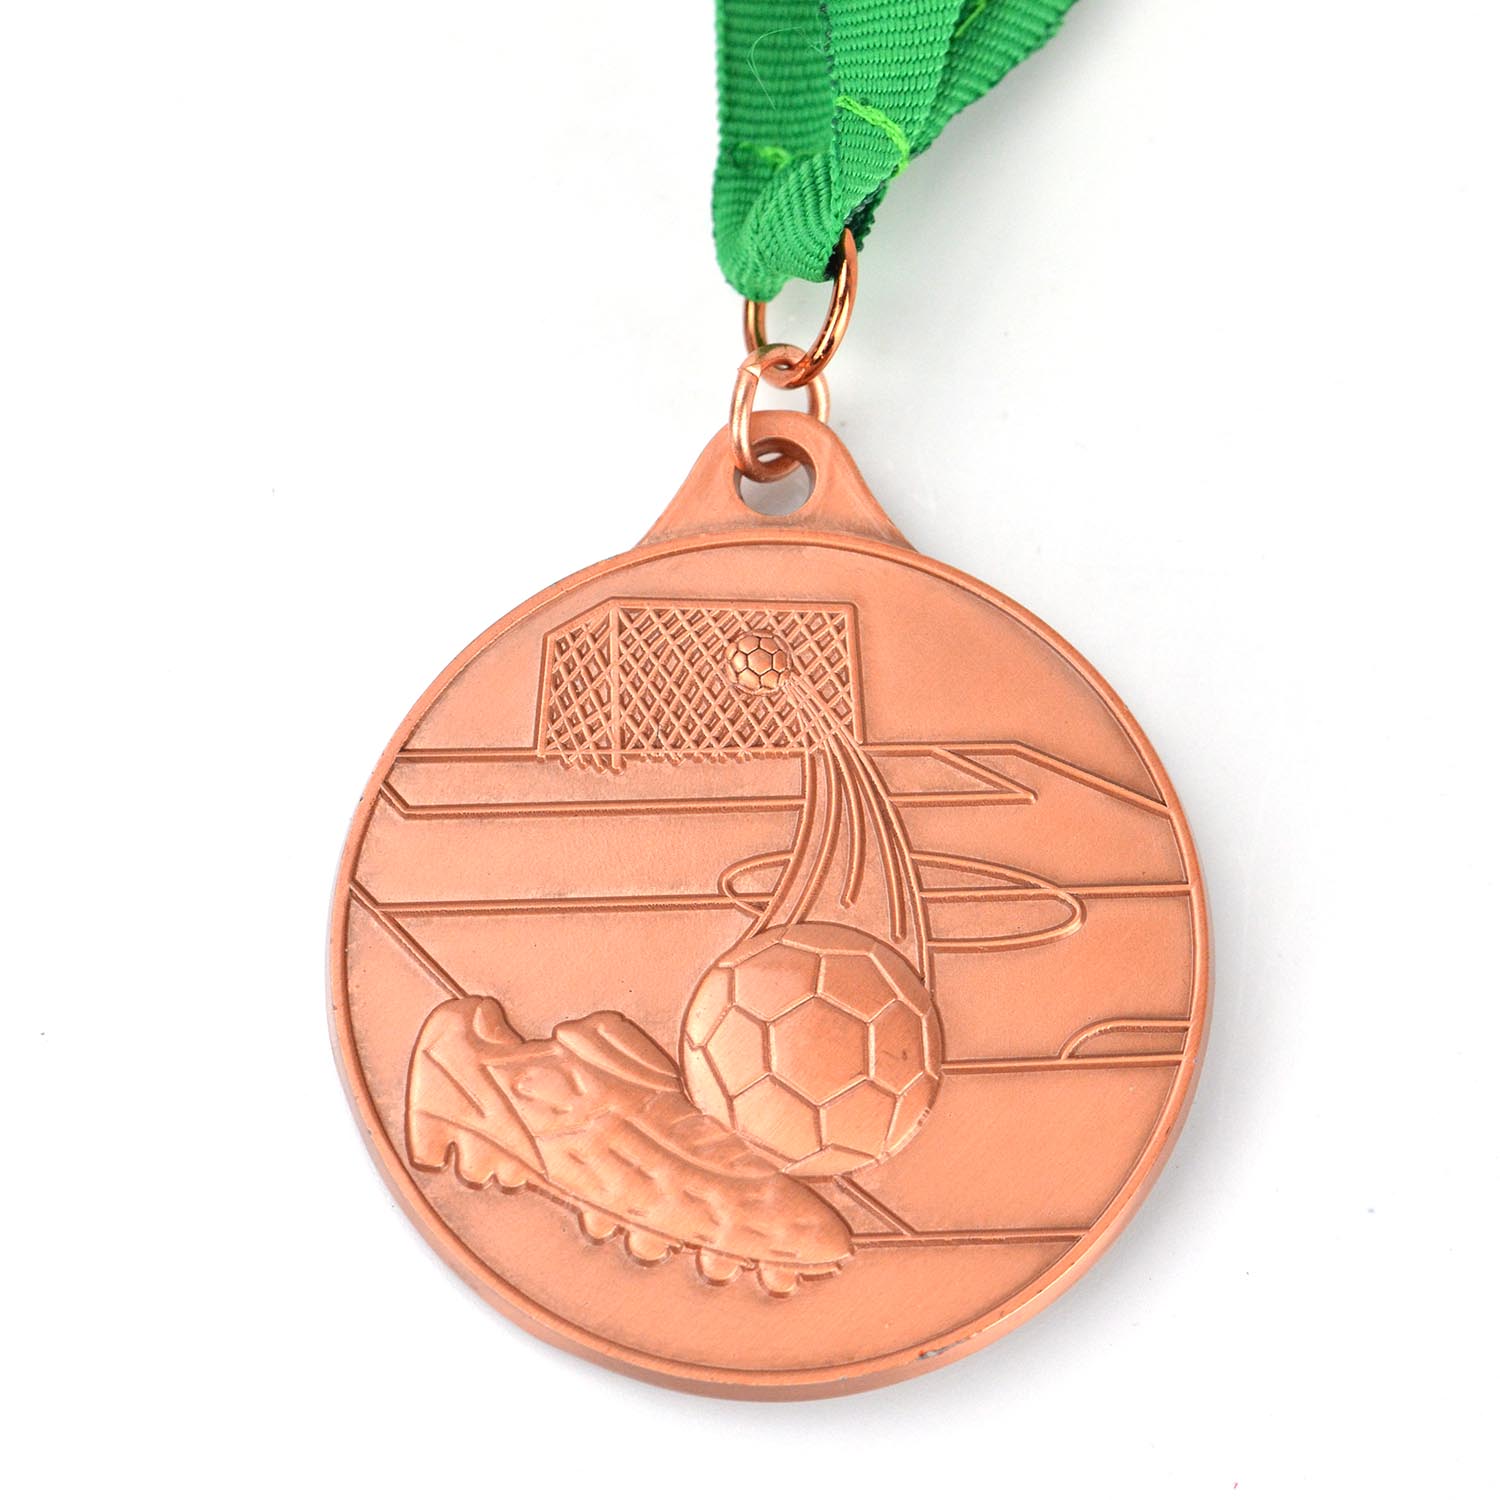 Εργοστασιακή Κατασκευή Αναμνηστικά Χρυσό Ασήμι Χάλκινο Μέταλλο Ποδόσφαιρο Βόλεϊ Μπάσκετ Προσαρμοσμένα αθλητικά μετάλλια μετάλλιο (9)